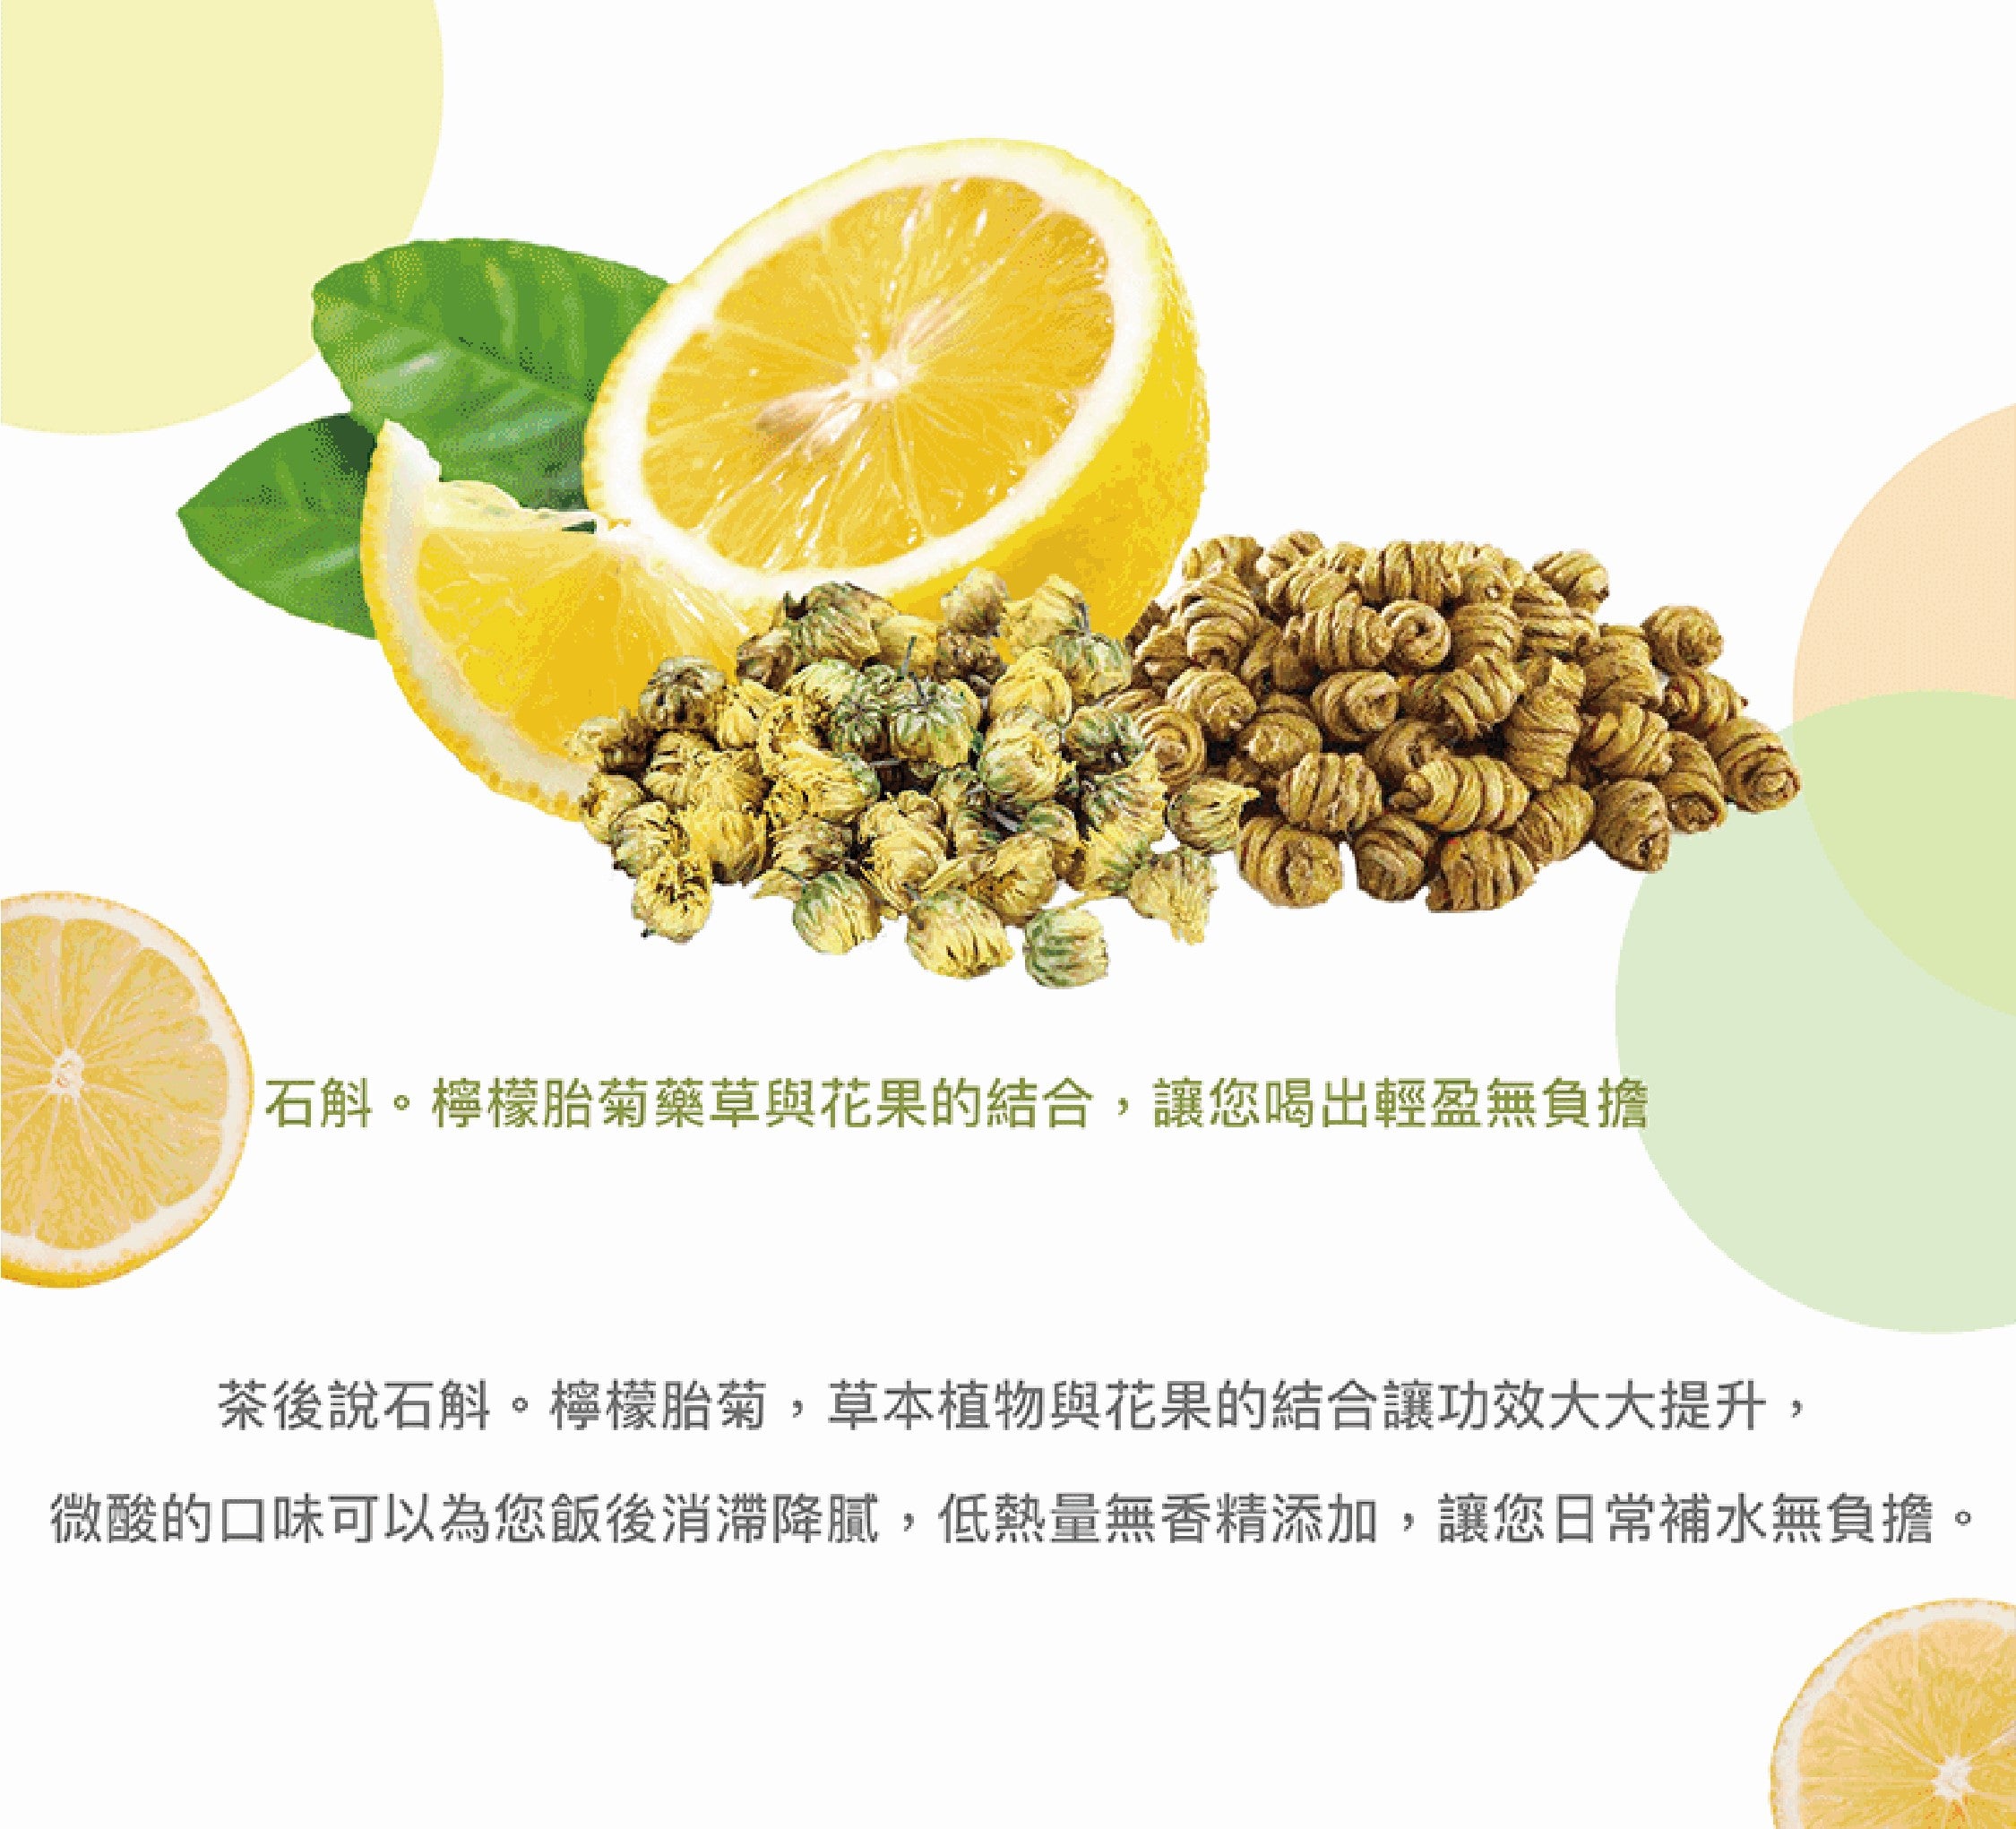 石斛·檸檬胎菊(花果茶)